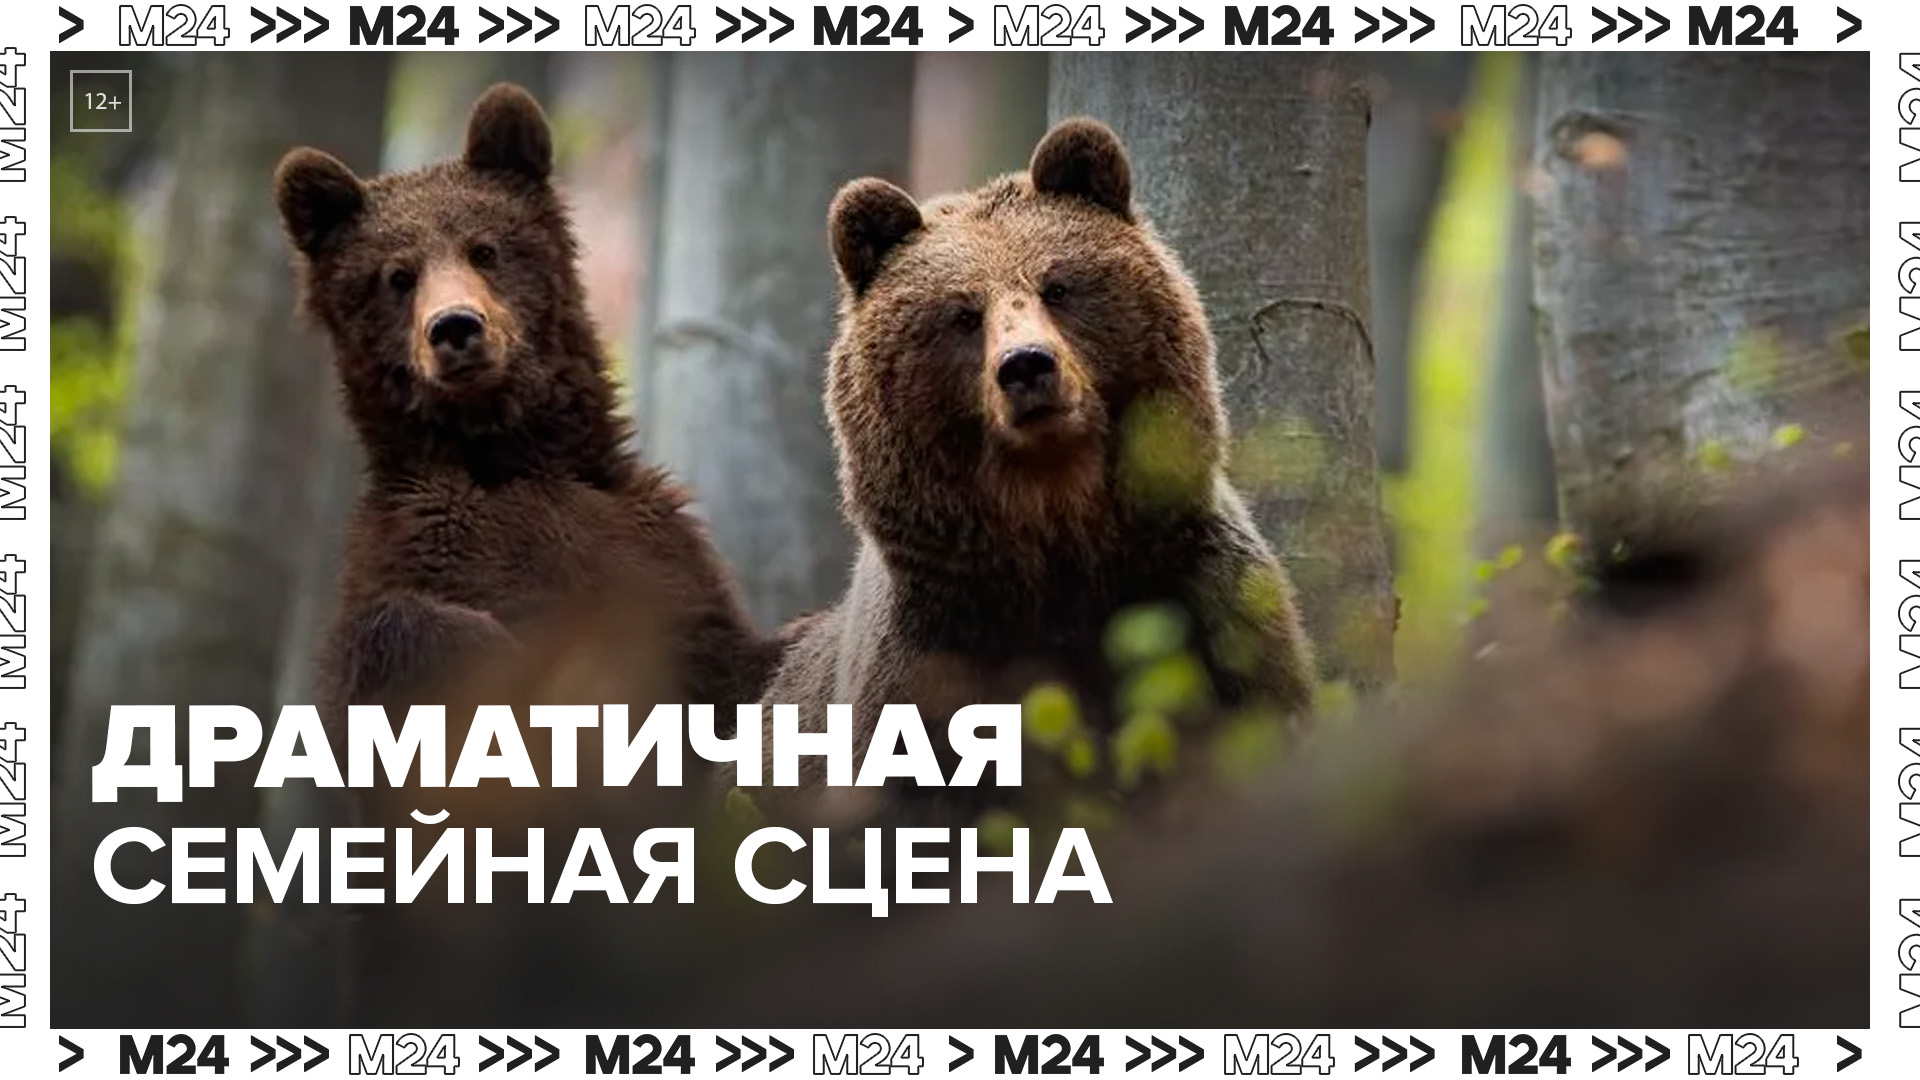 В Приморье водитель стал очевидцем семейной сцены медведей - Москва 24